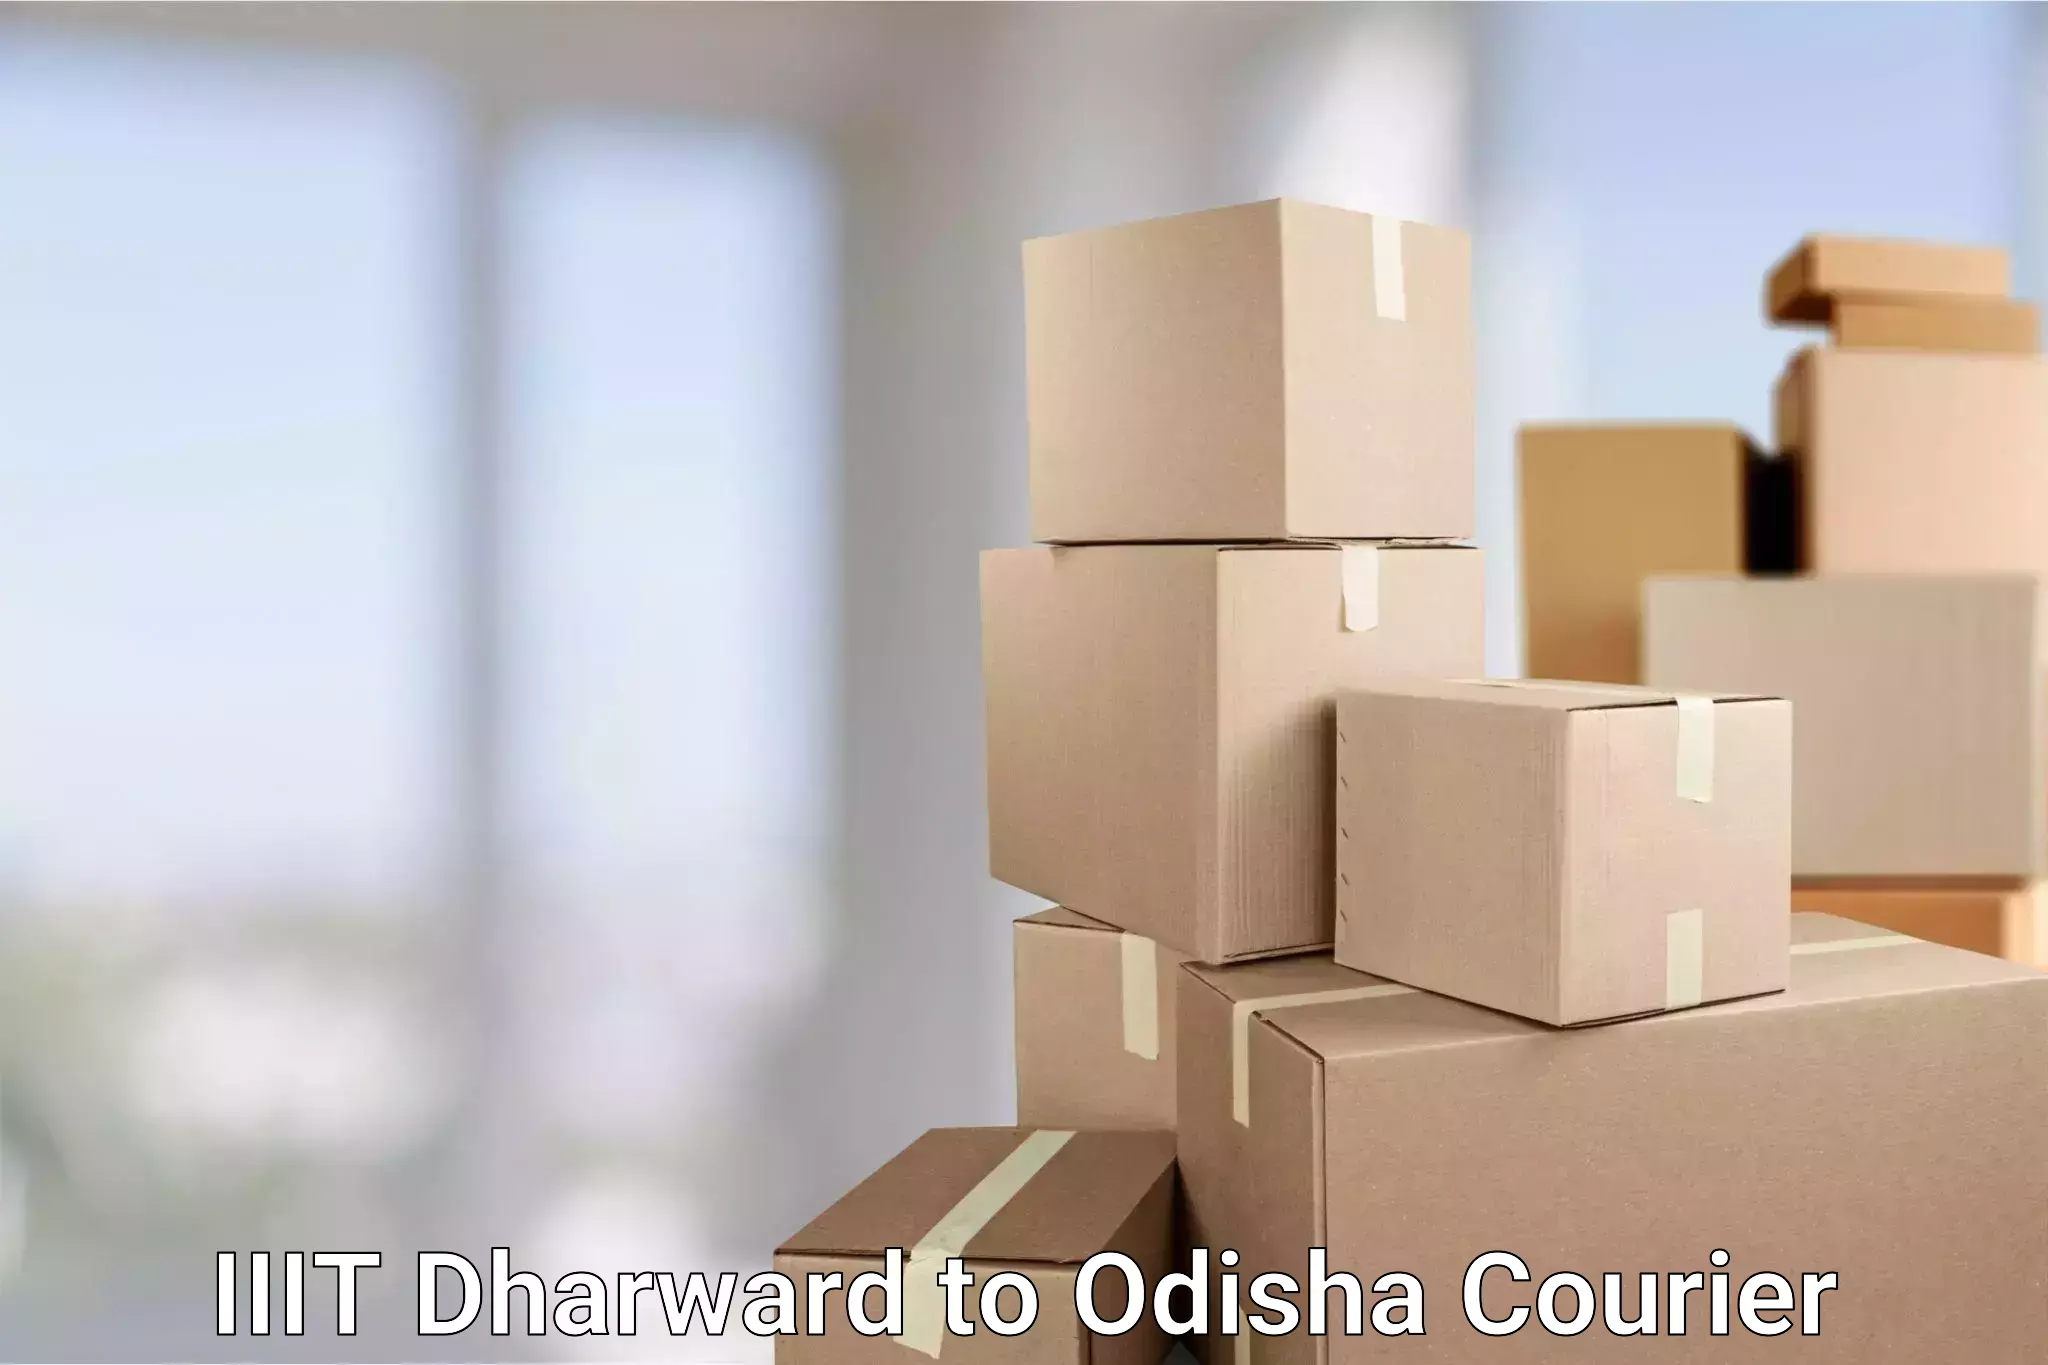 Business shipping needs in IIIT Dharward to Odisha